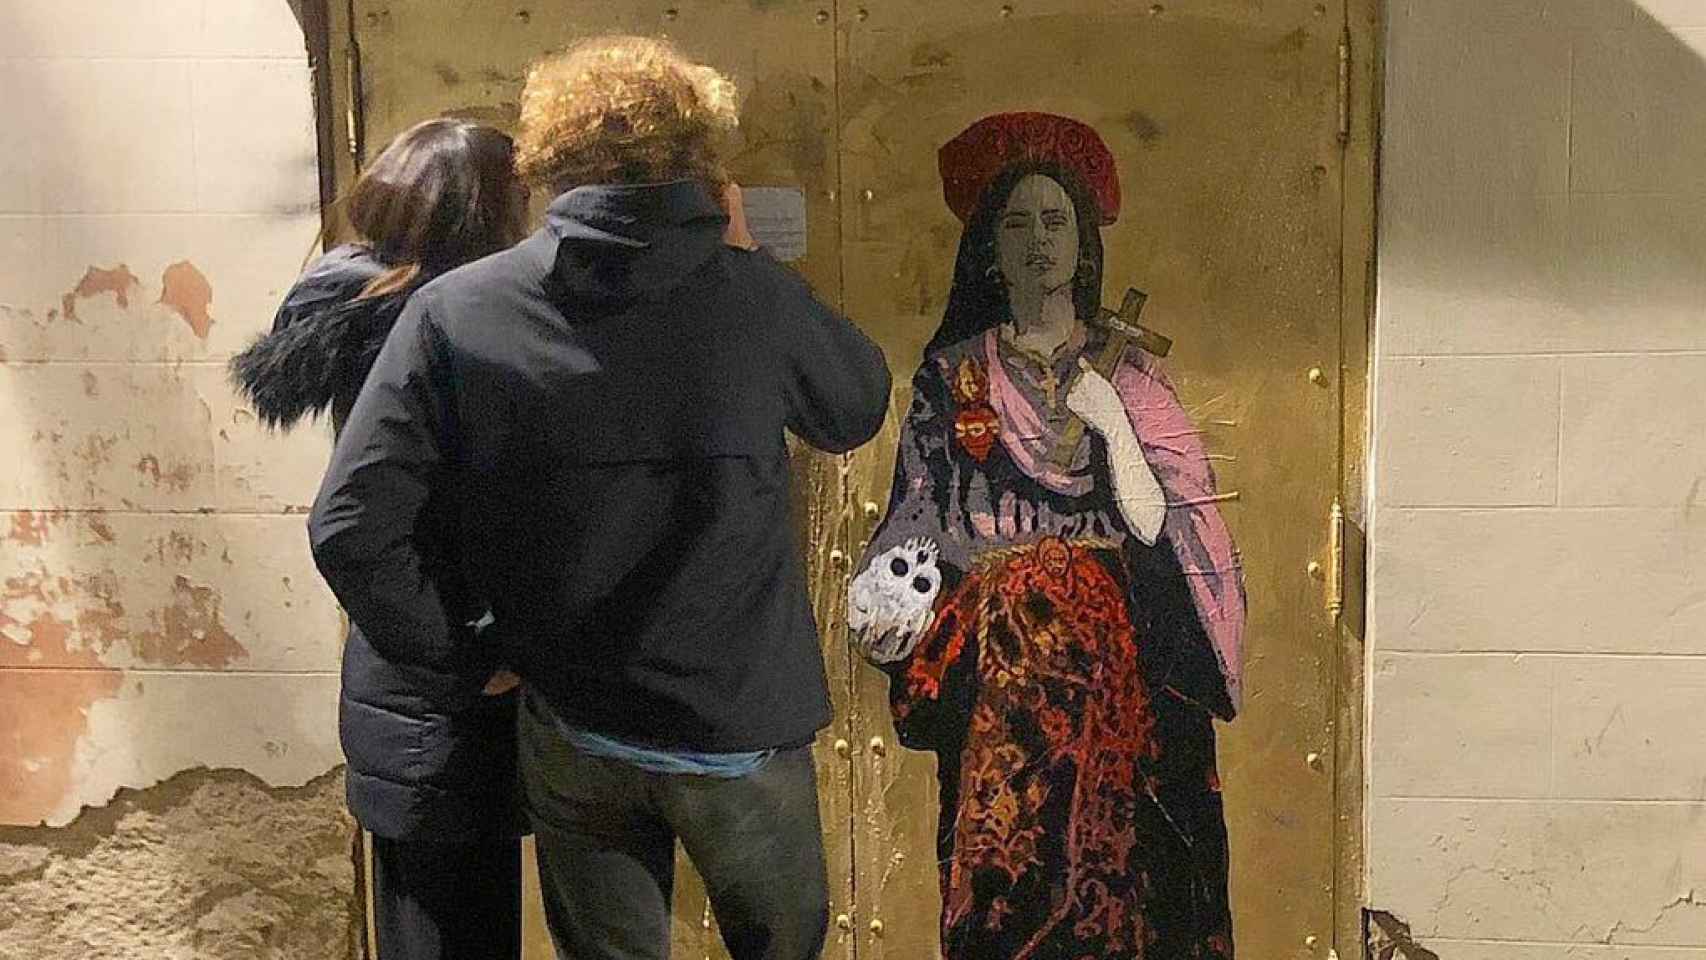 Rosalía, pintada como Santa por el artista urbano TvBoy en el Fossar de les Moreres, Barcelona.